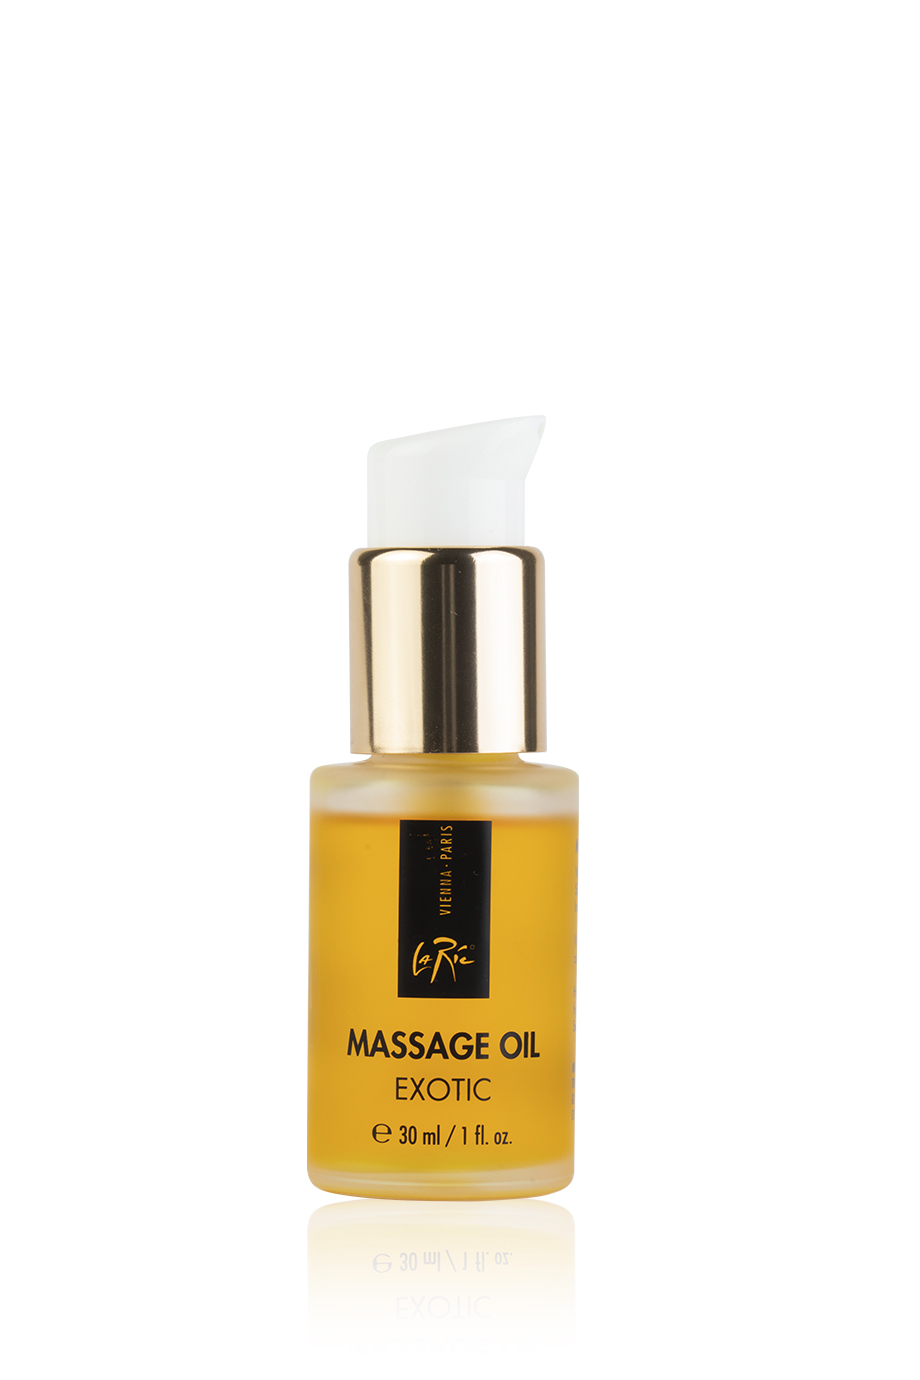 La Ric Aroma Massage Oil Exotic 30ml - интернет-магазин профессиональной косметики Spadream, изображение 38602